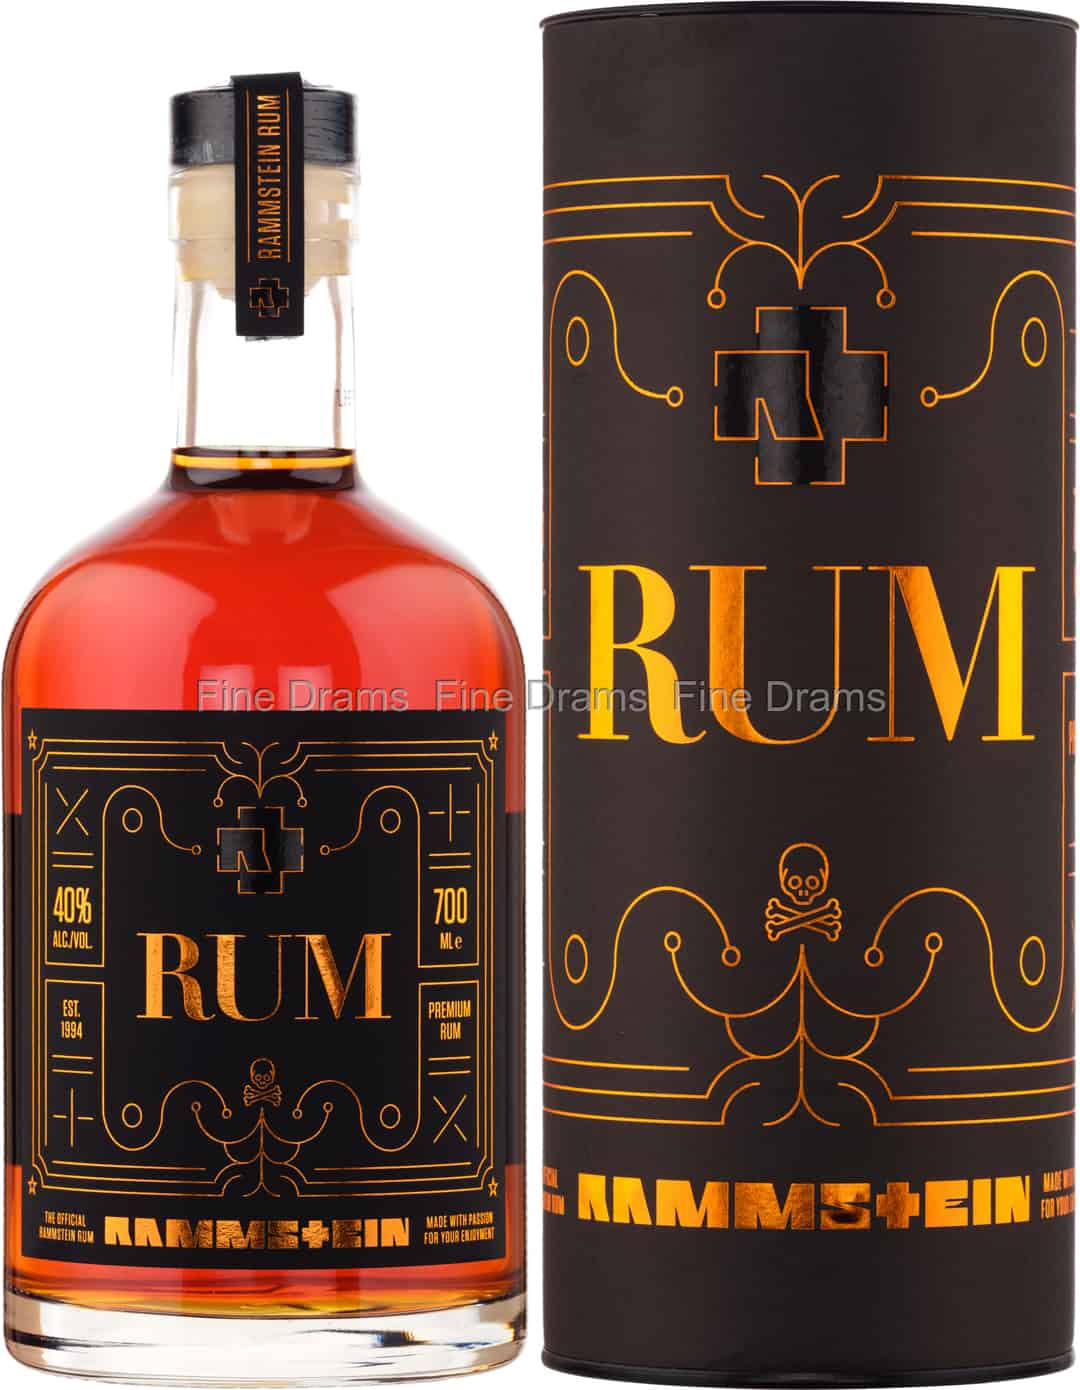 Rum Rhum Rammstein Édition Limitée Port Cask